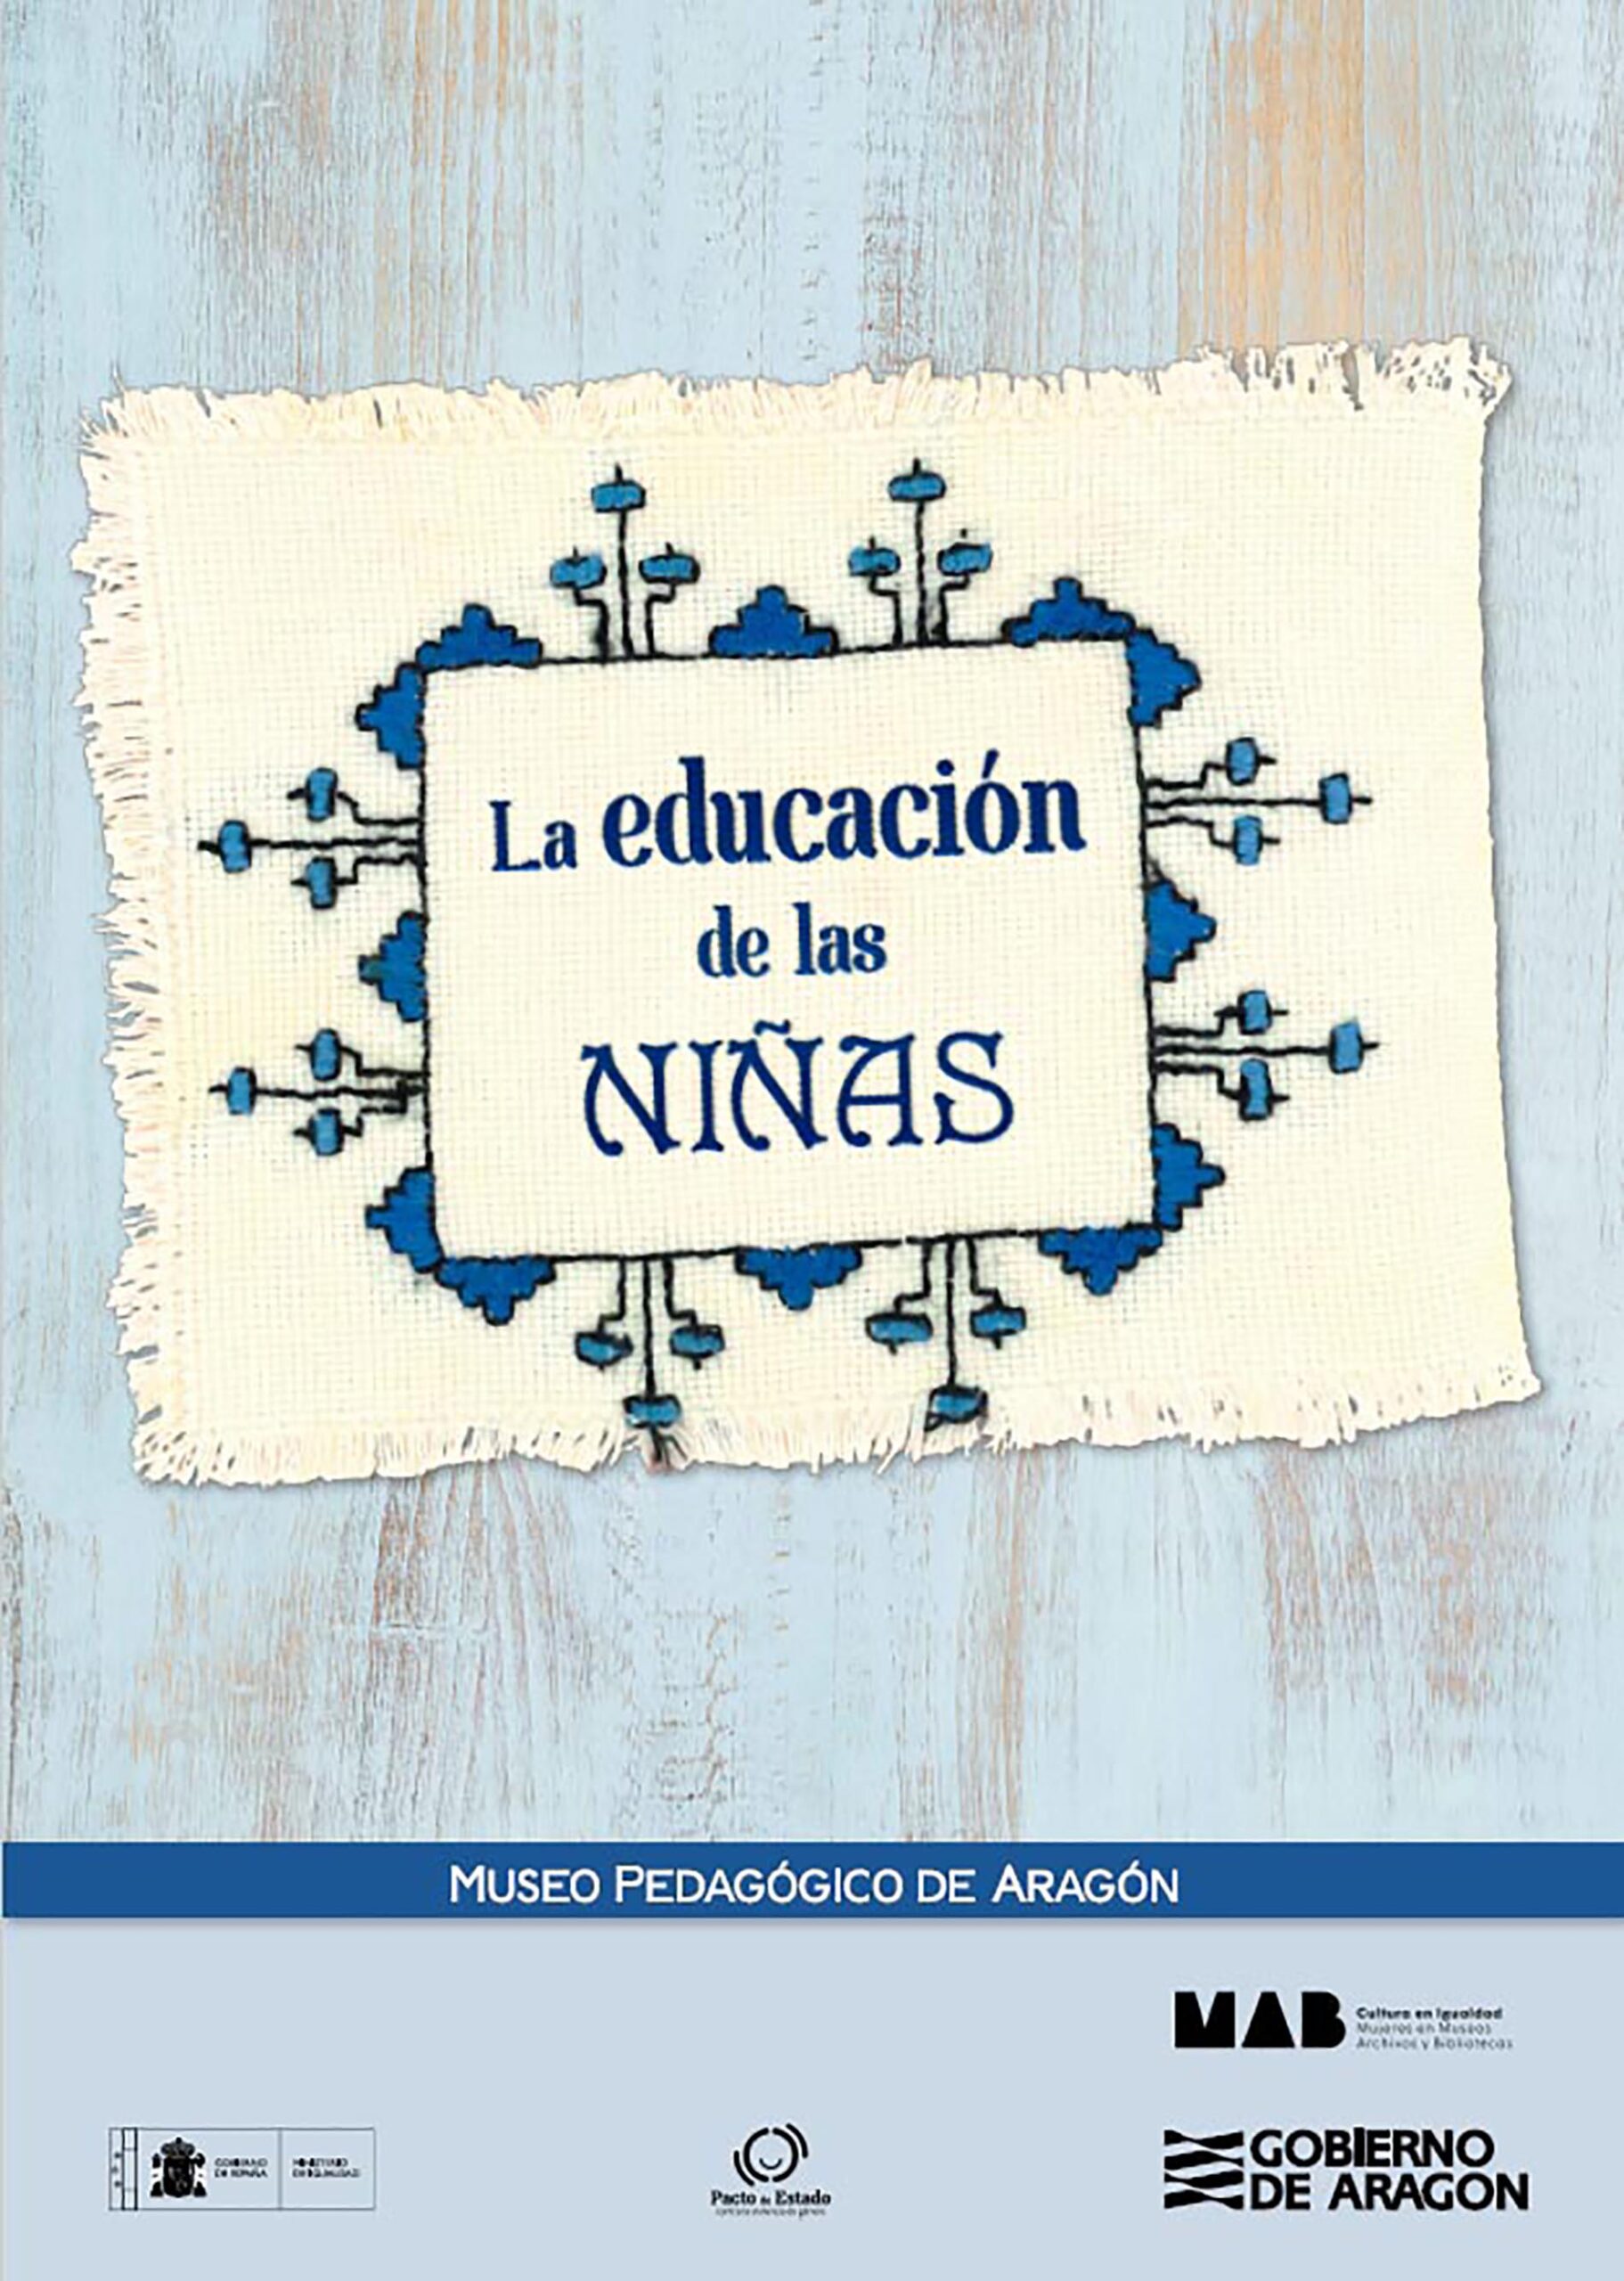 La educación de las niñas. Foto: Archivo fotográfico del Museo Pedagógico de Aragón